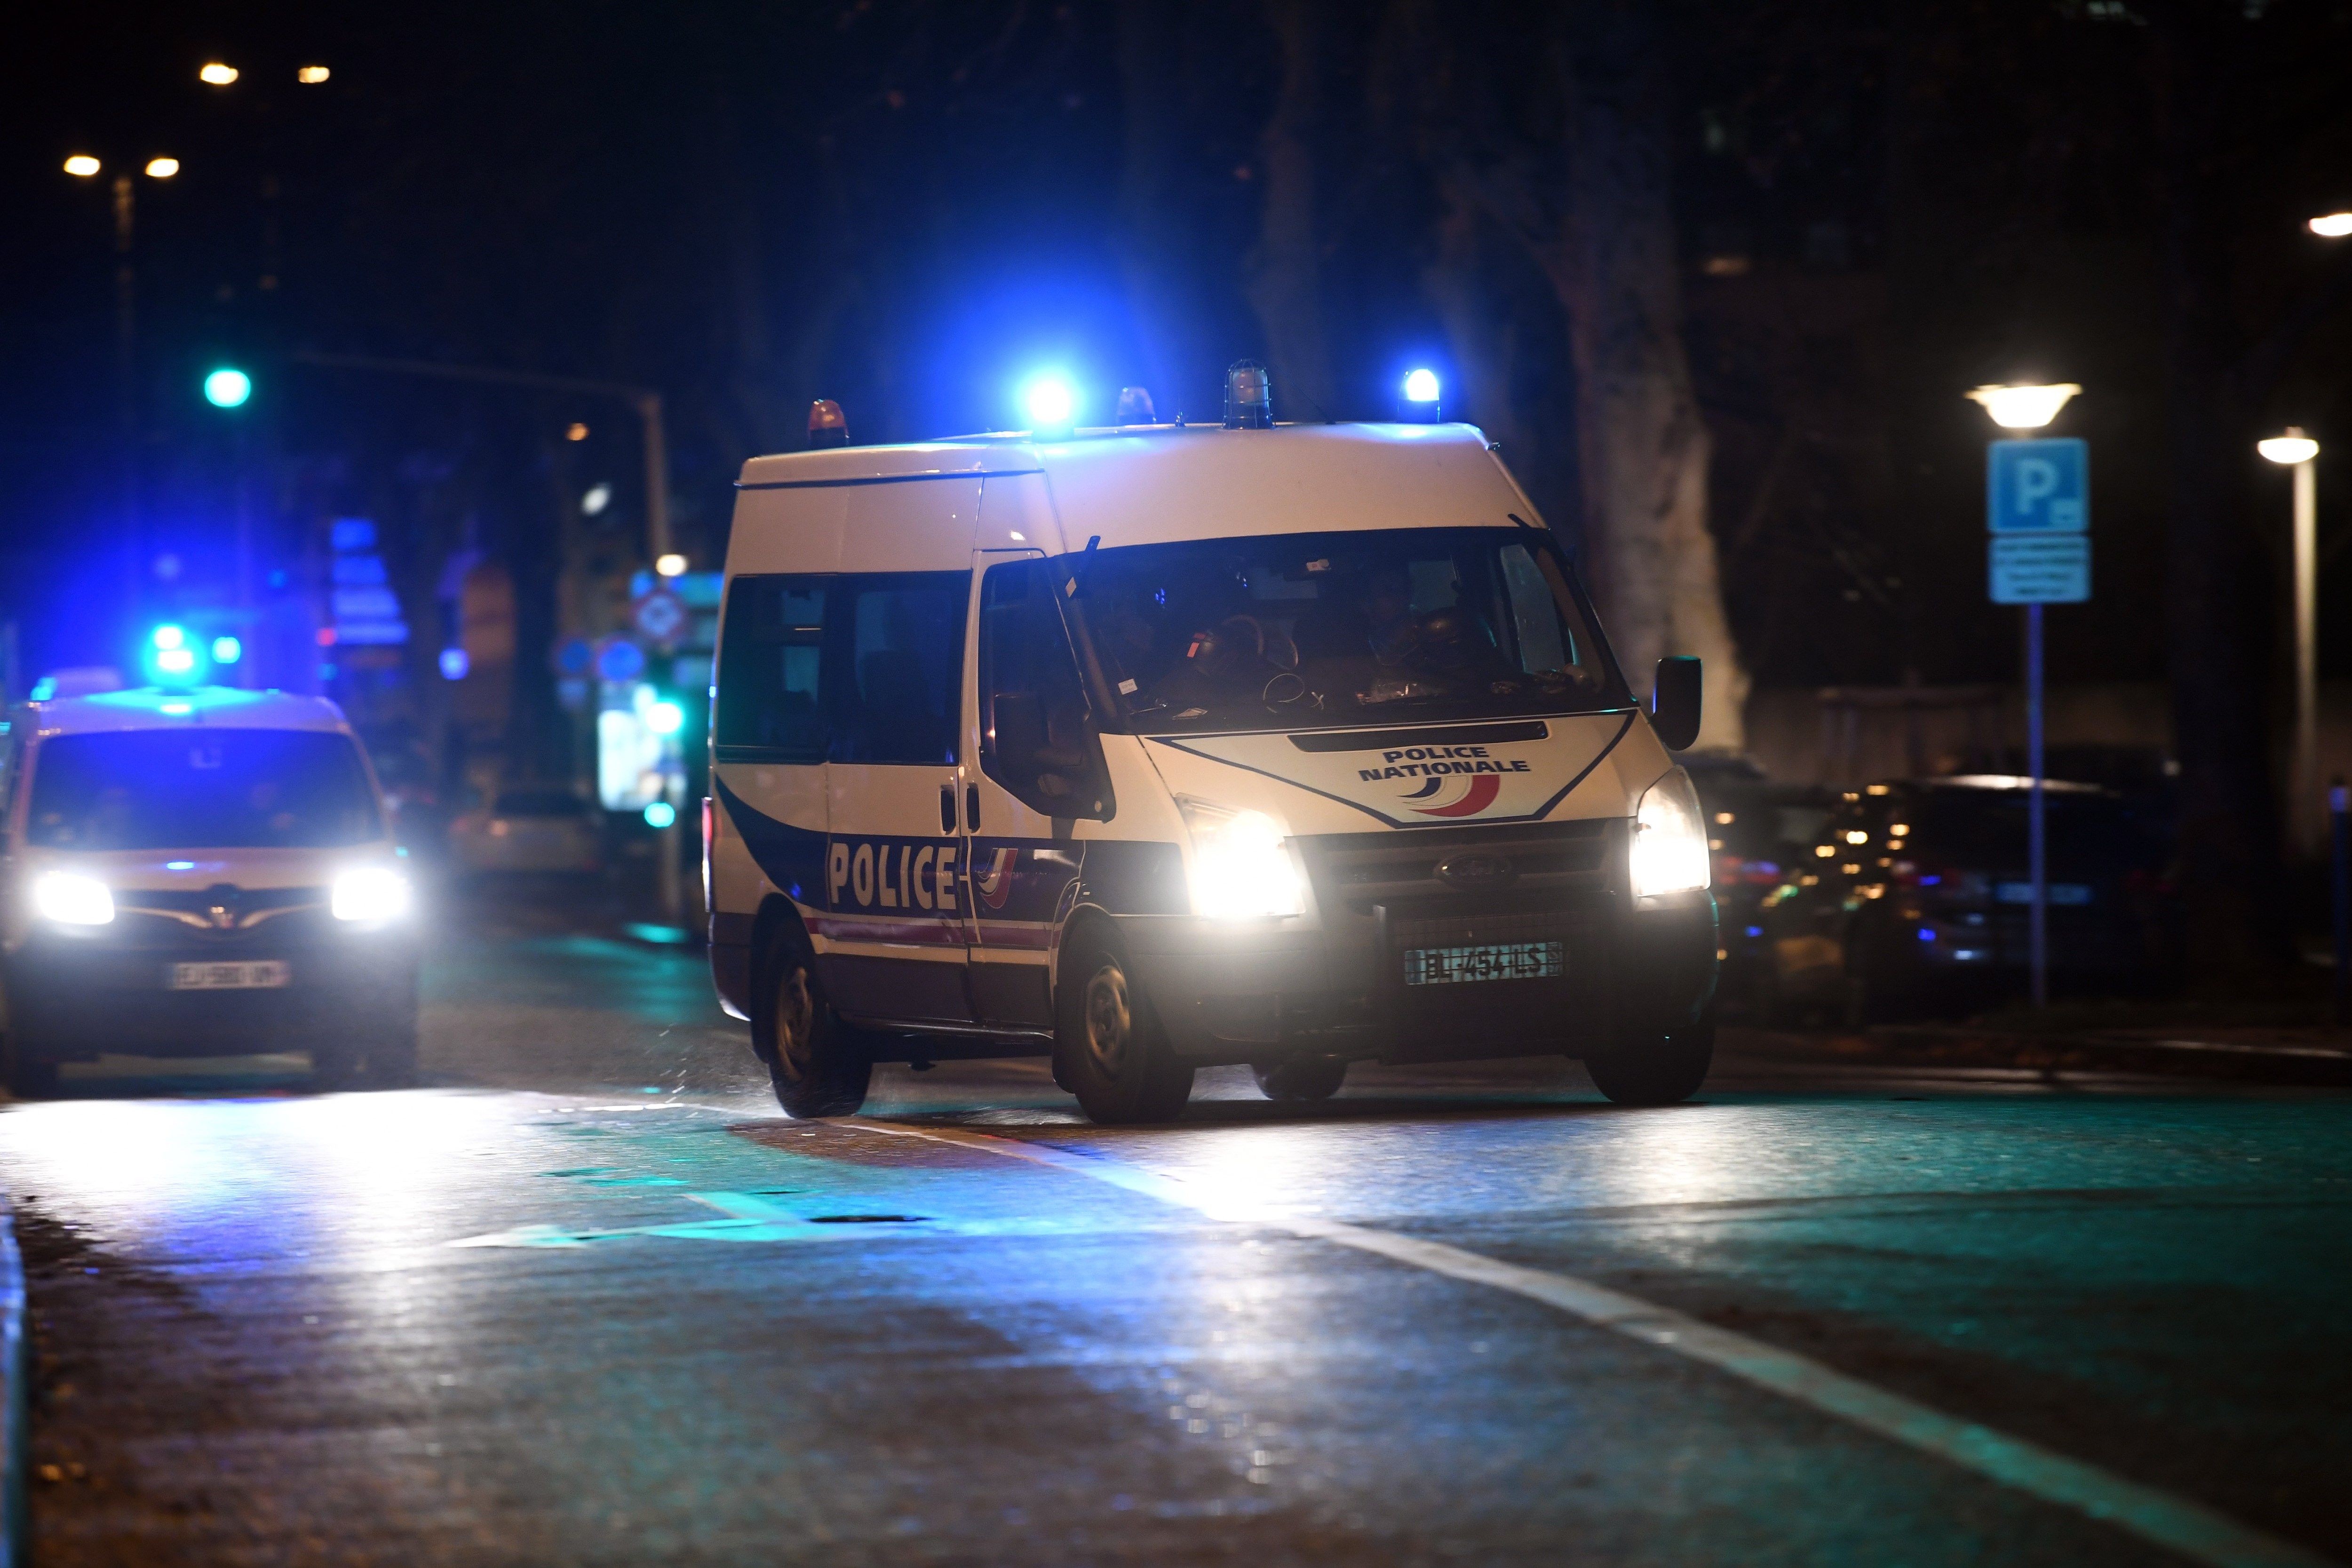  Sube a cuatro la cifra de muertos por tiroteo en Estrasburgo, Francia